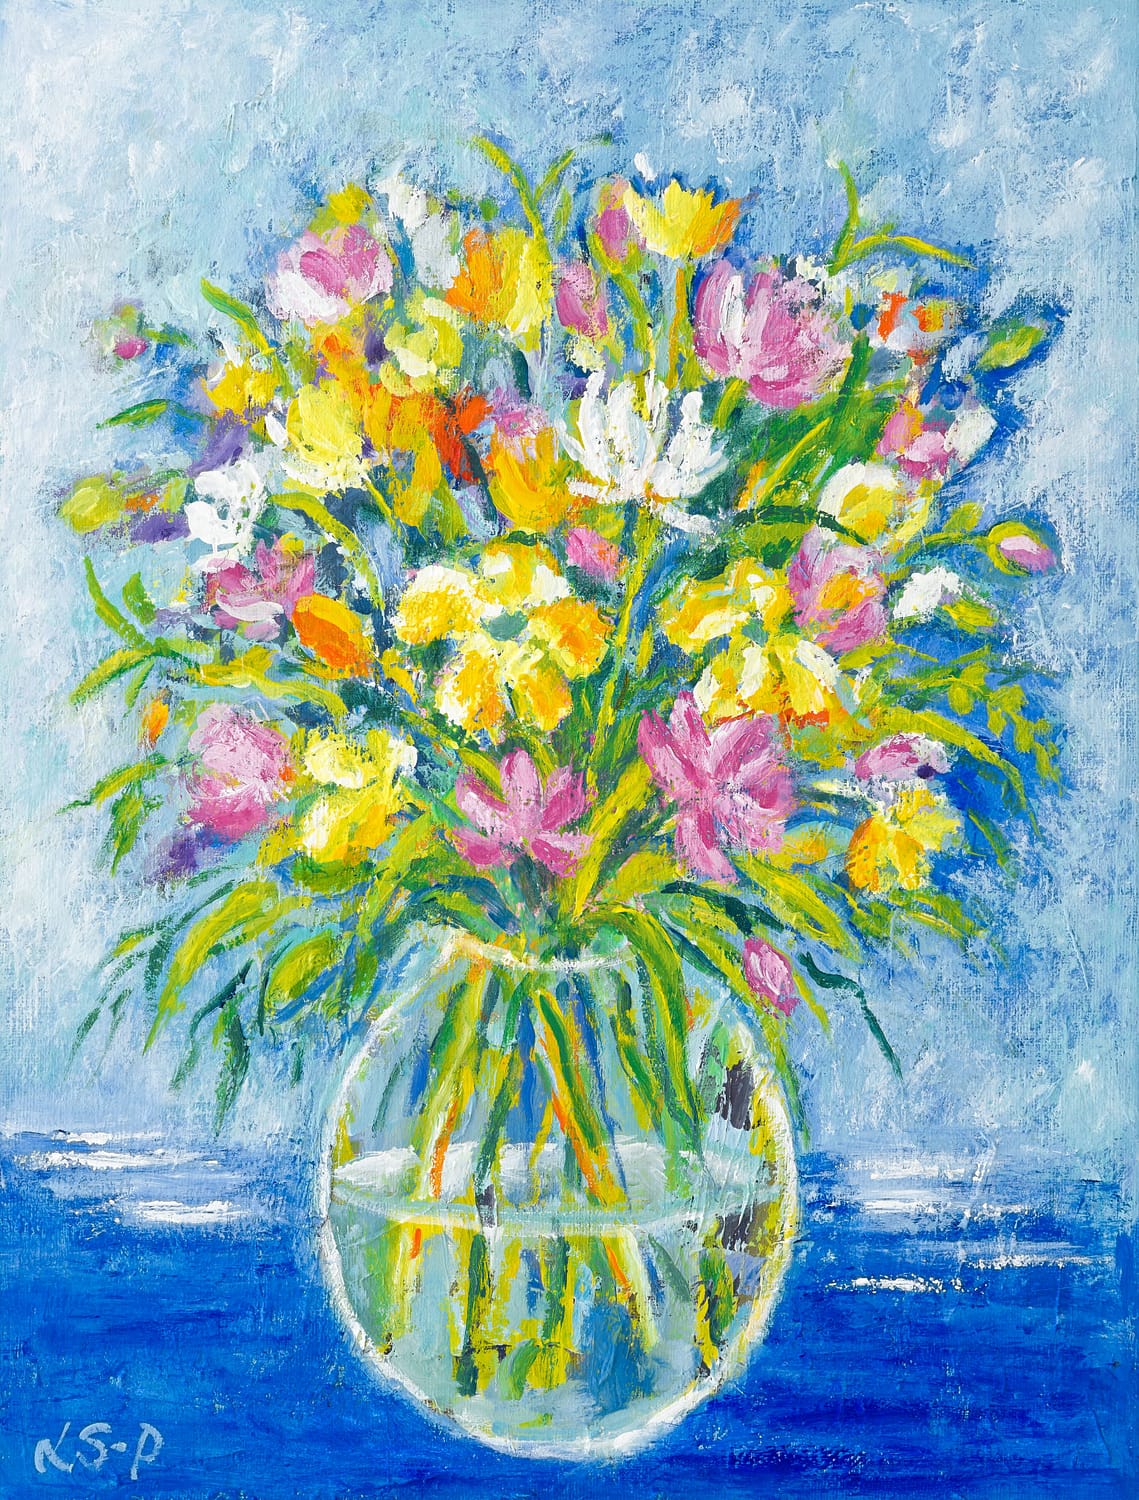 Lene Schmidt-Petersen: "Sunshine Flowers" (38 x 50 cm)